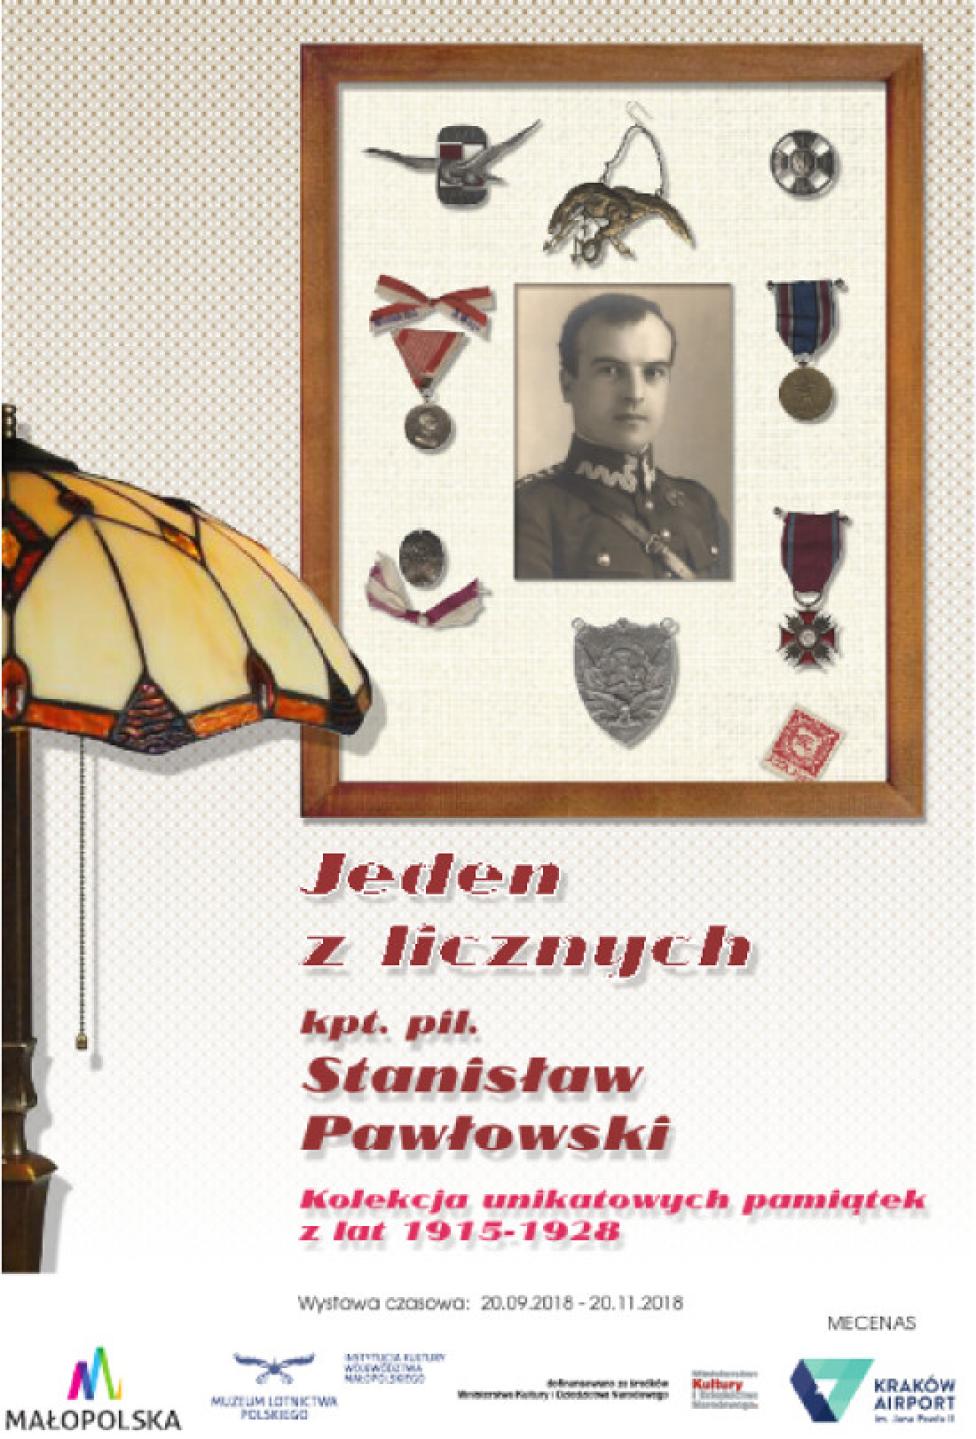 Unikatowe pamiątki po kpt. pil. Stanisławie Pawłowskim na wystawie w MLP